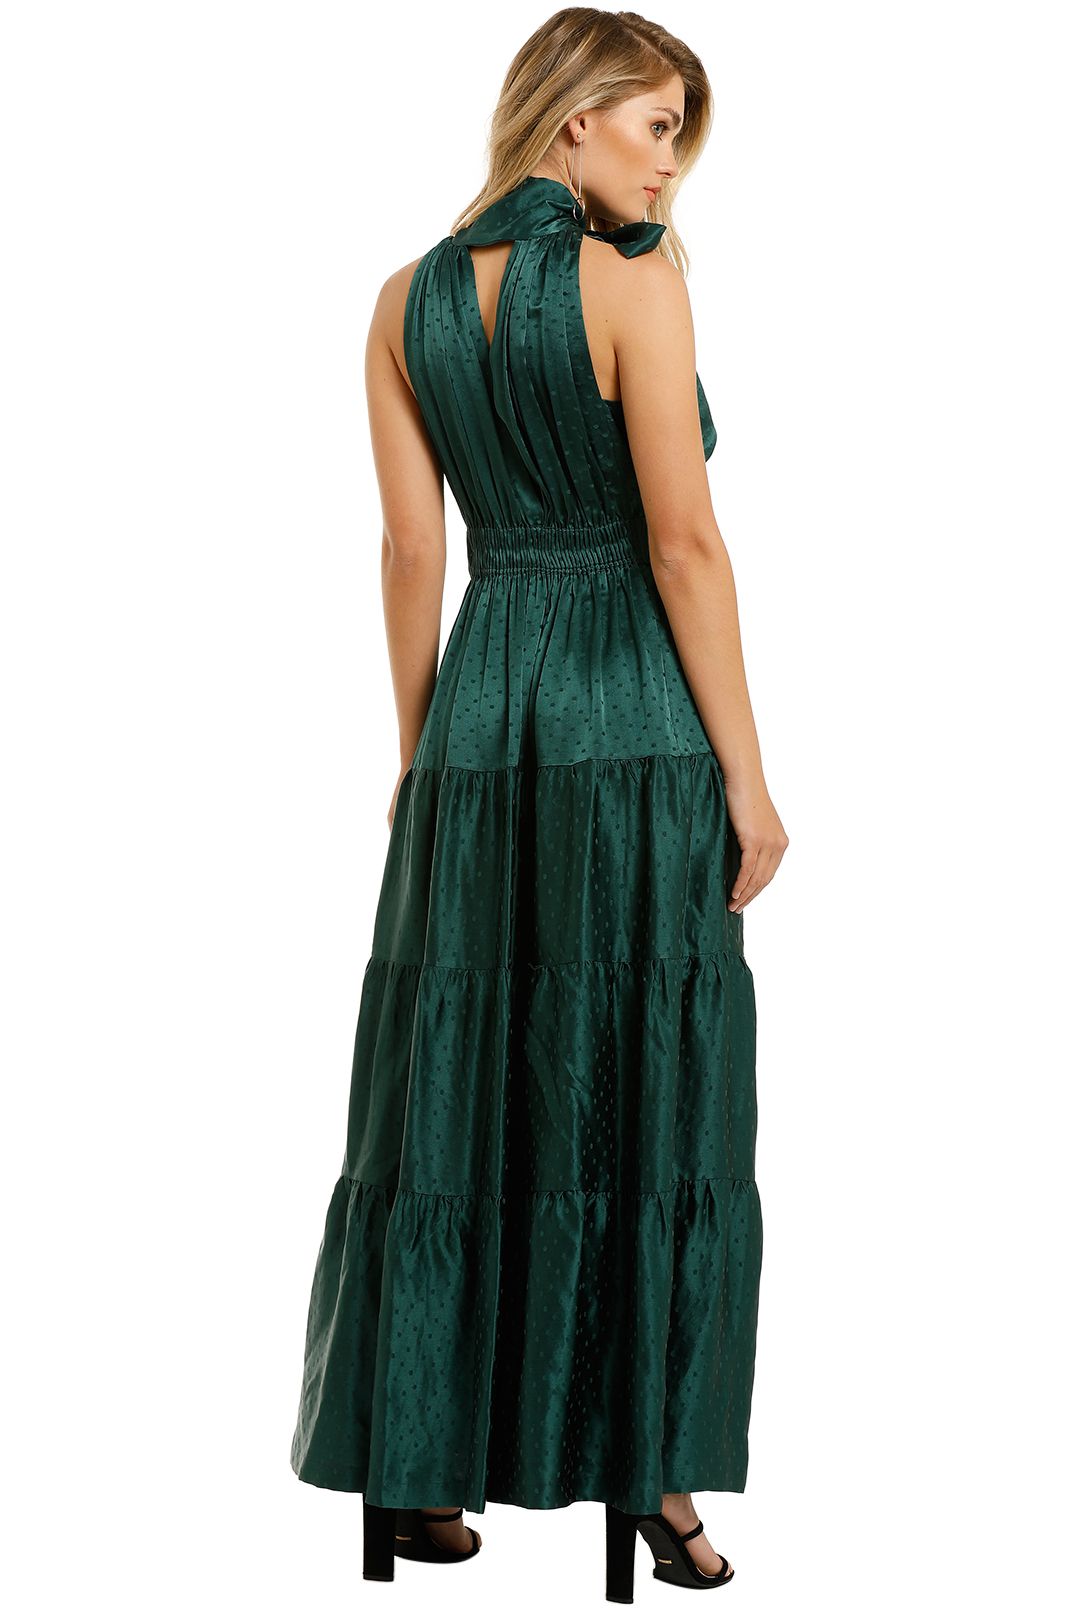 KITX-Essence-Spot-Dress-Emerald-Back